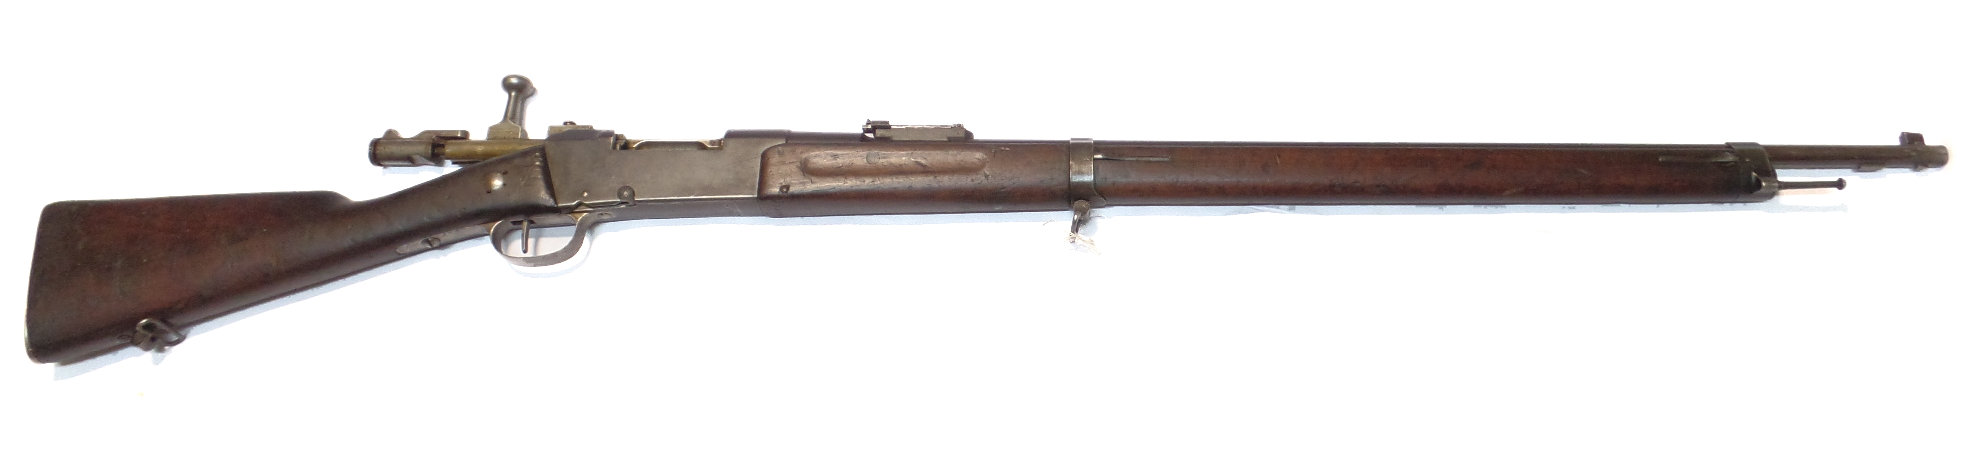 Fusil LEBEL modèle 1886 modifié 1893 calibre 8mm LEBEL France.